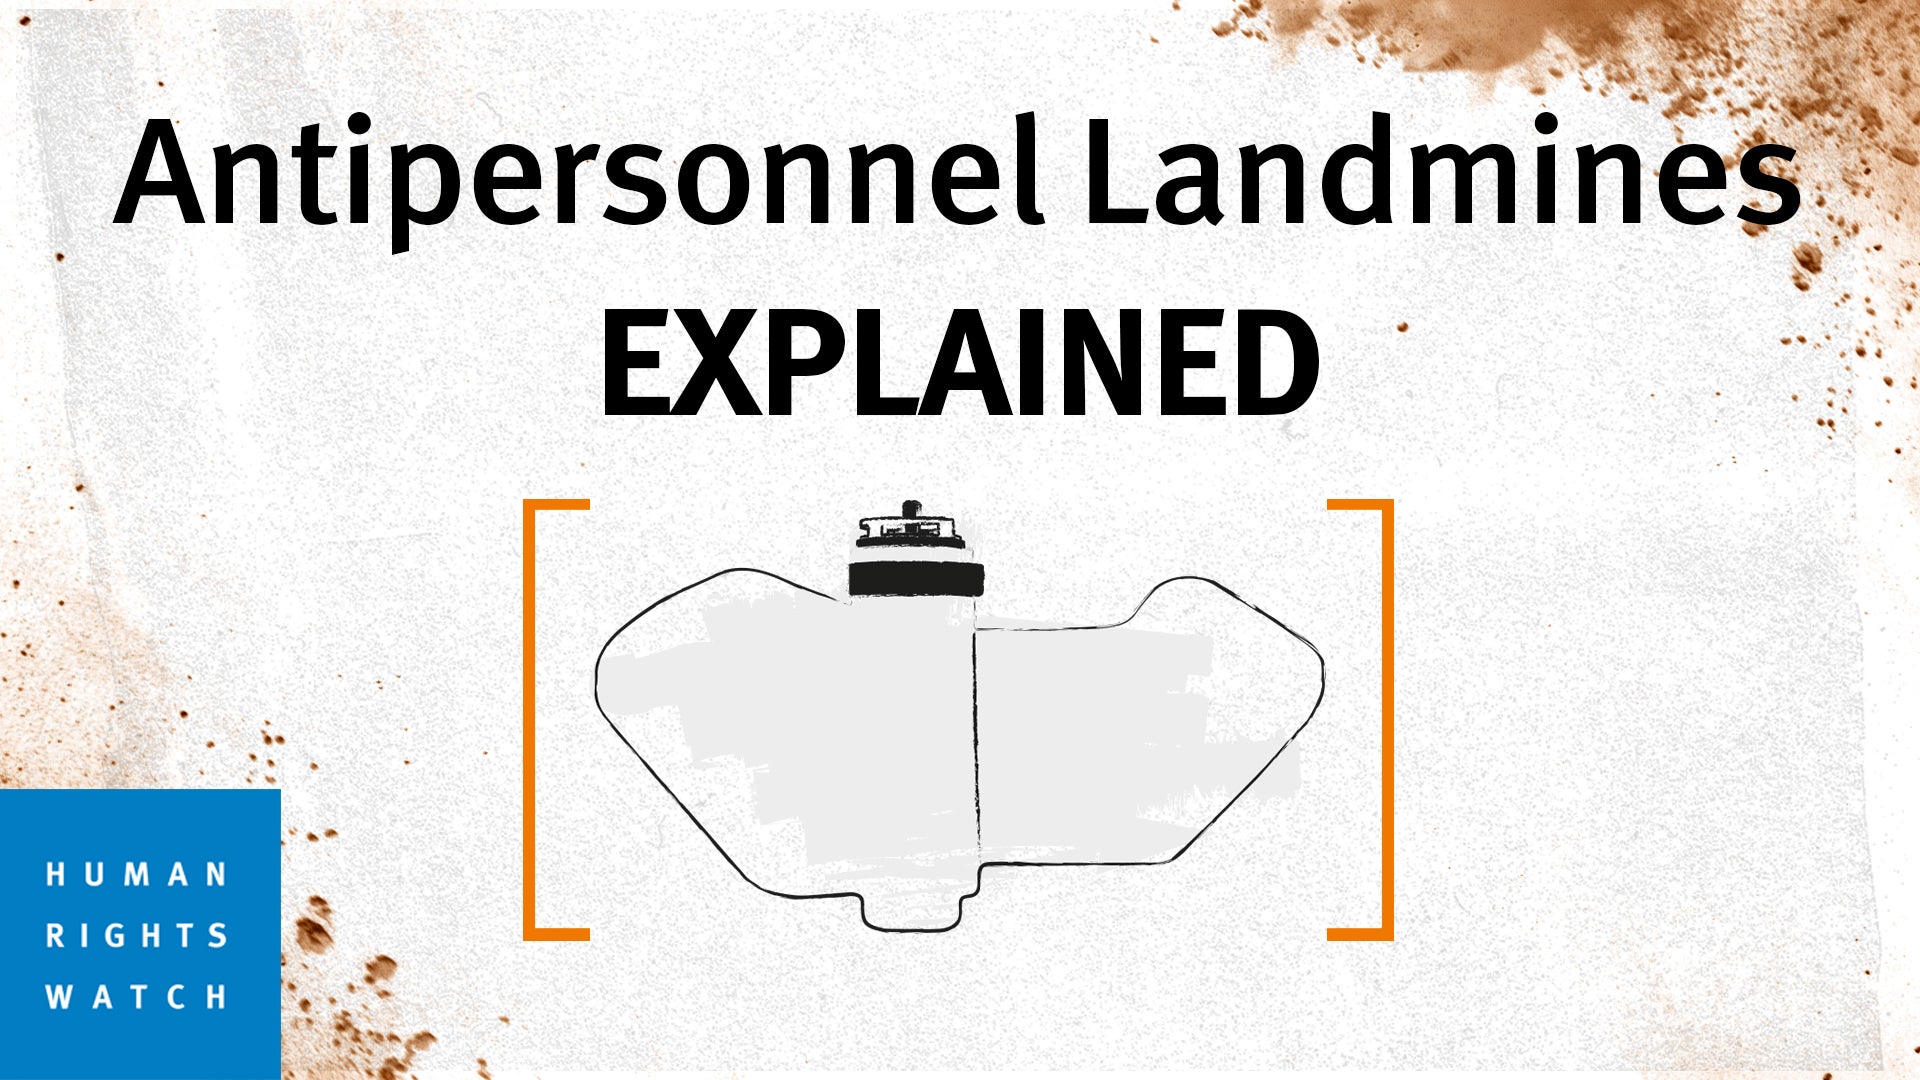 antipersonnel landmines explained